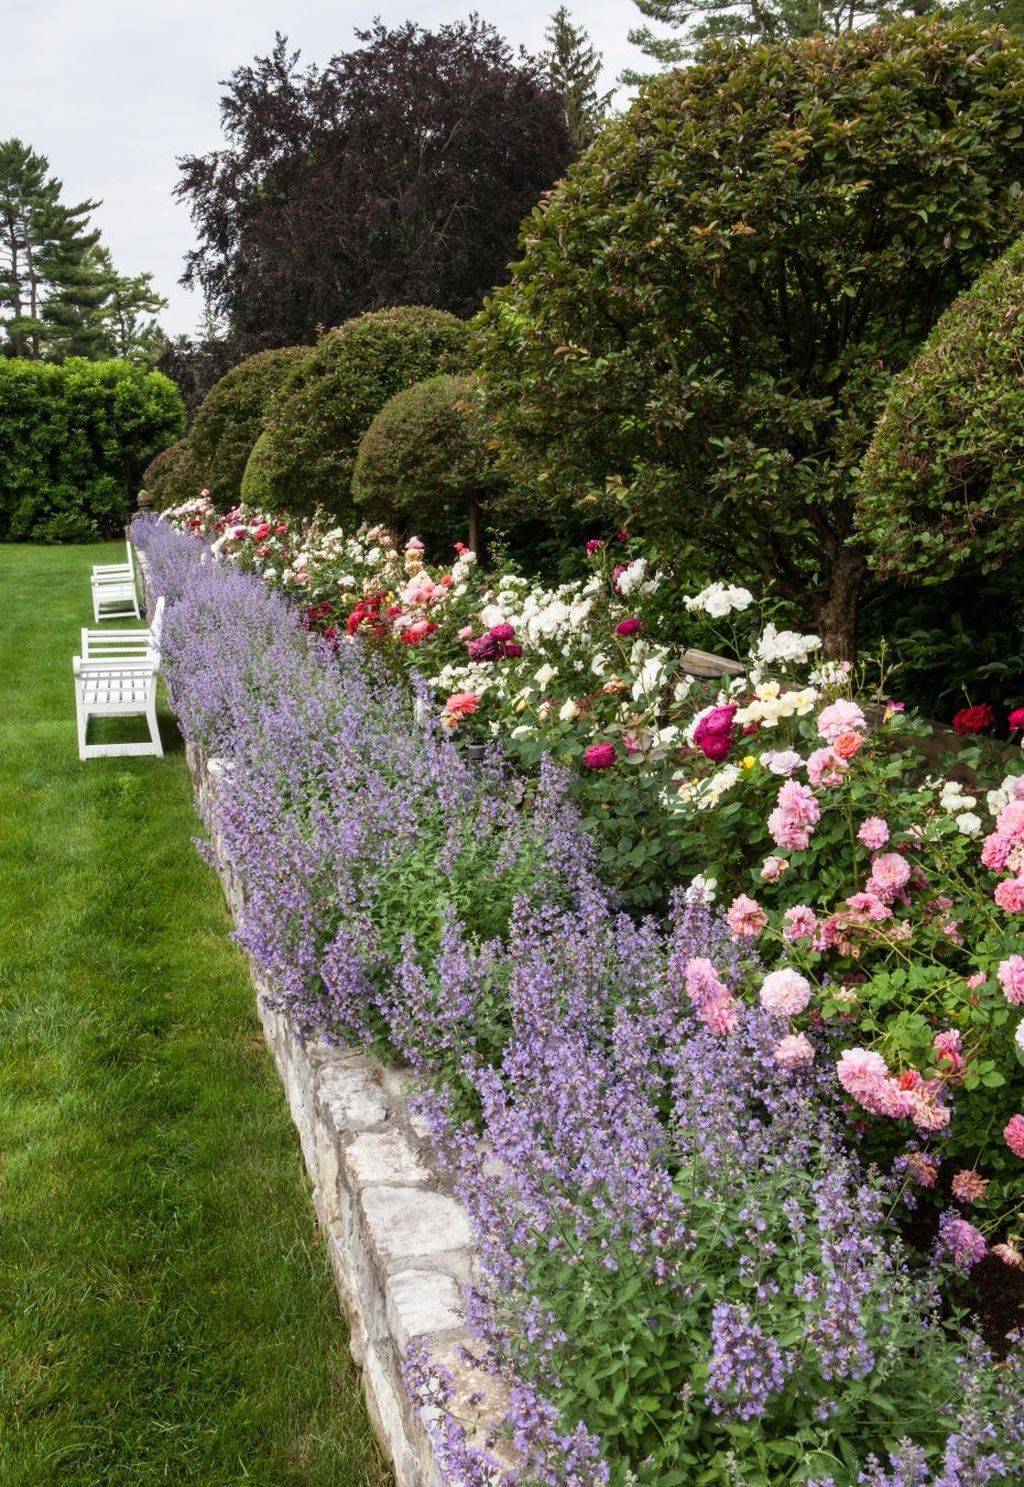 Lovely Pink Rose Gardening Ideas Backyard